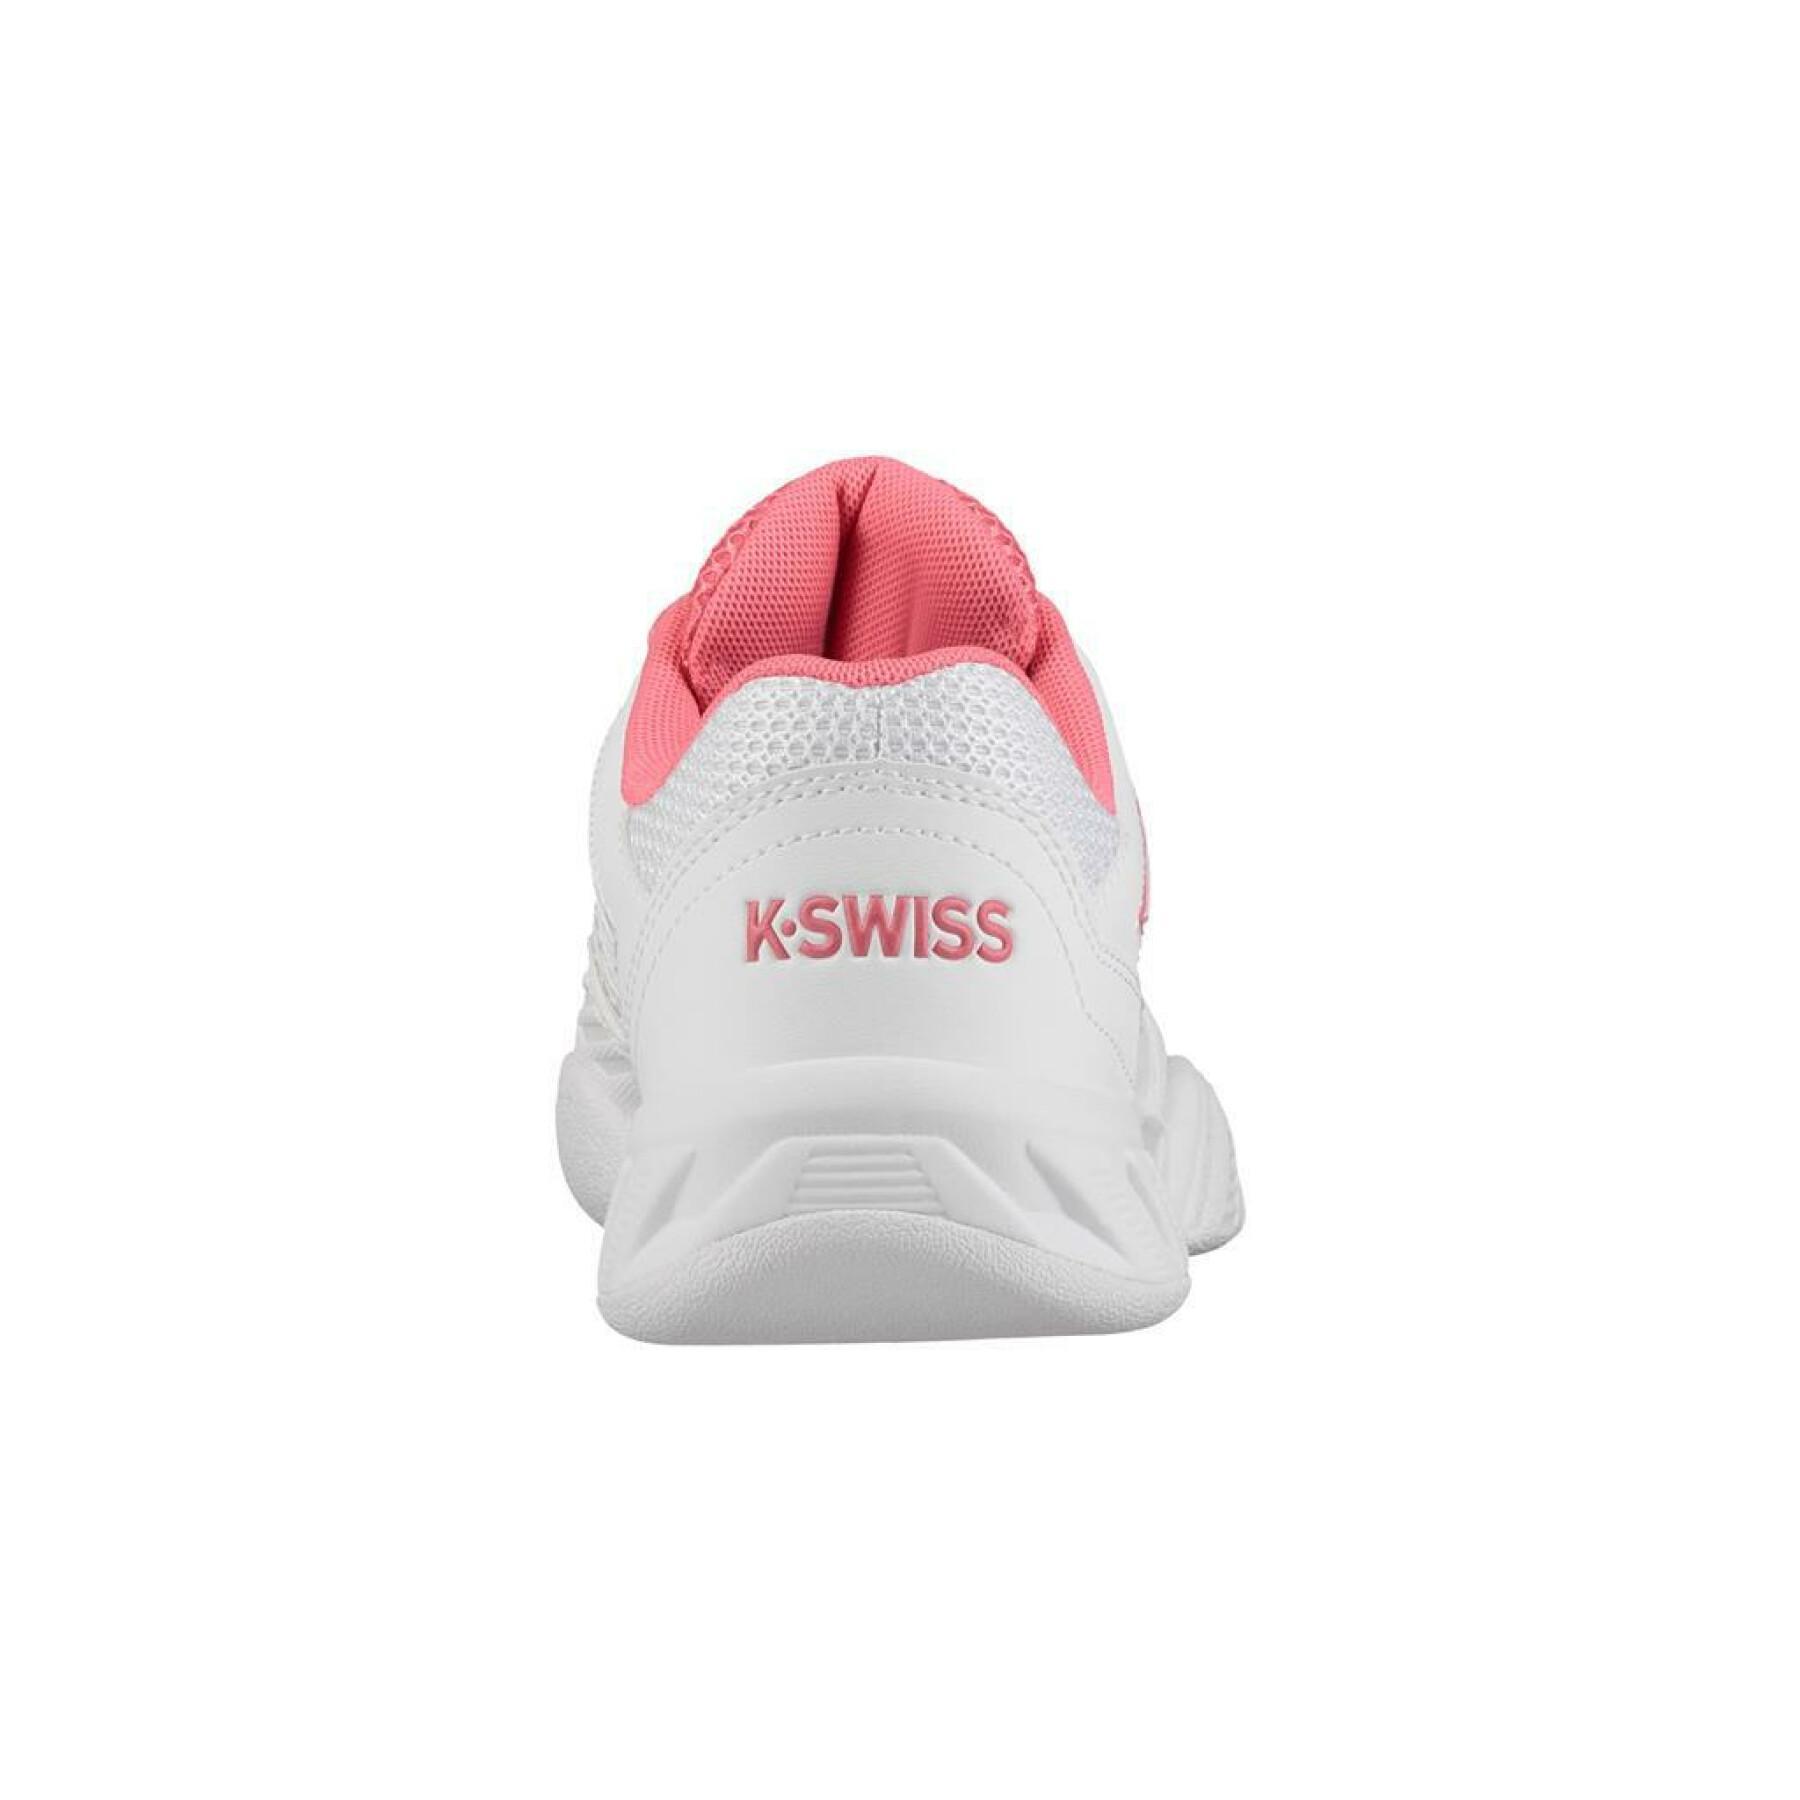 Chaussures femme K-Swiss bigshot light 3 carpet